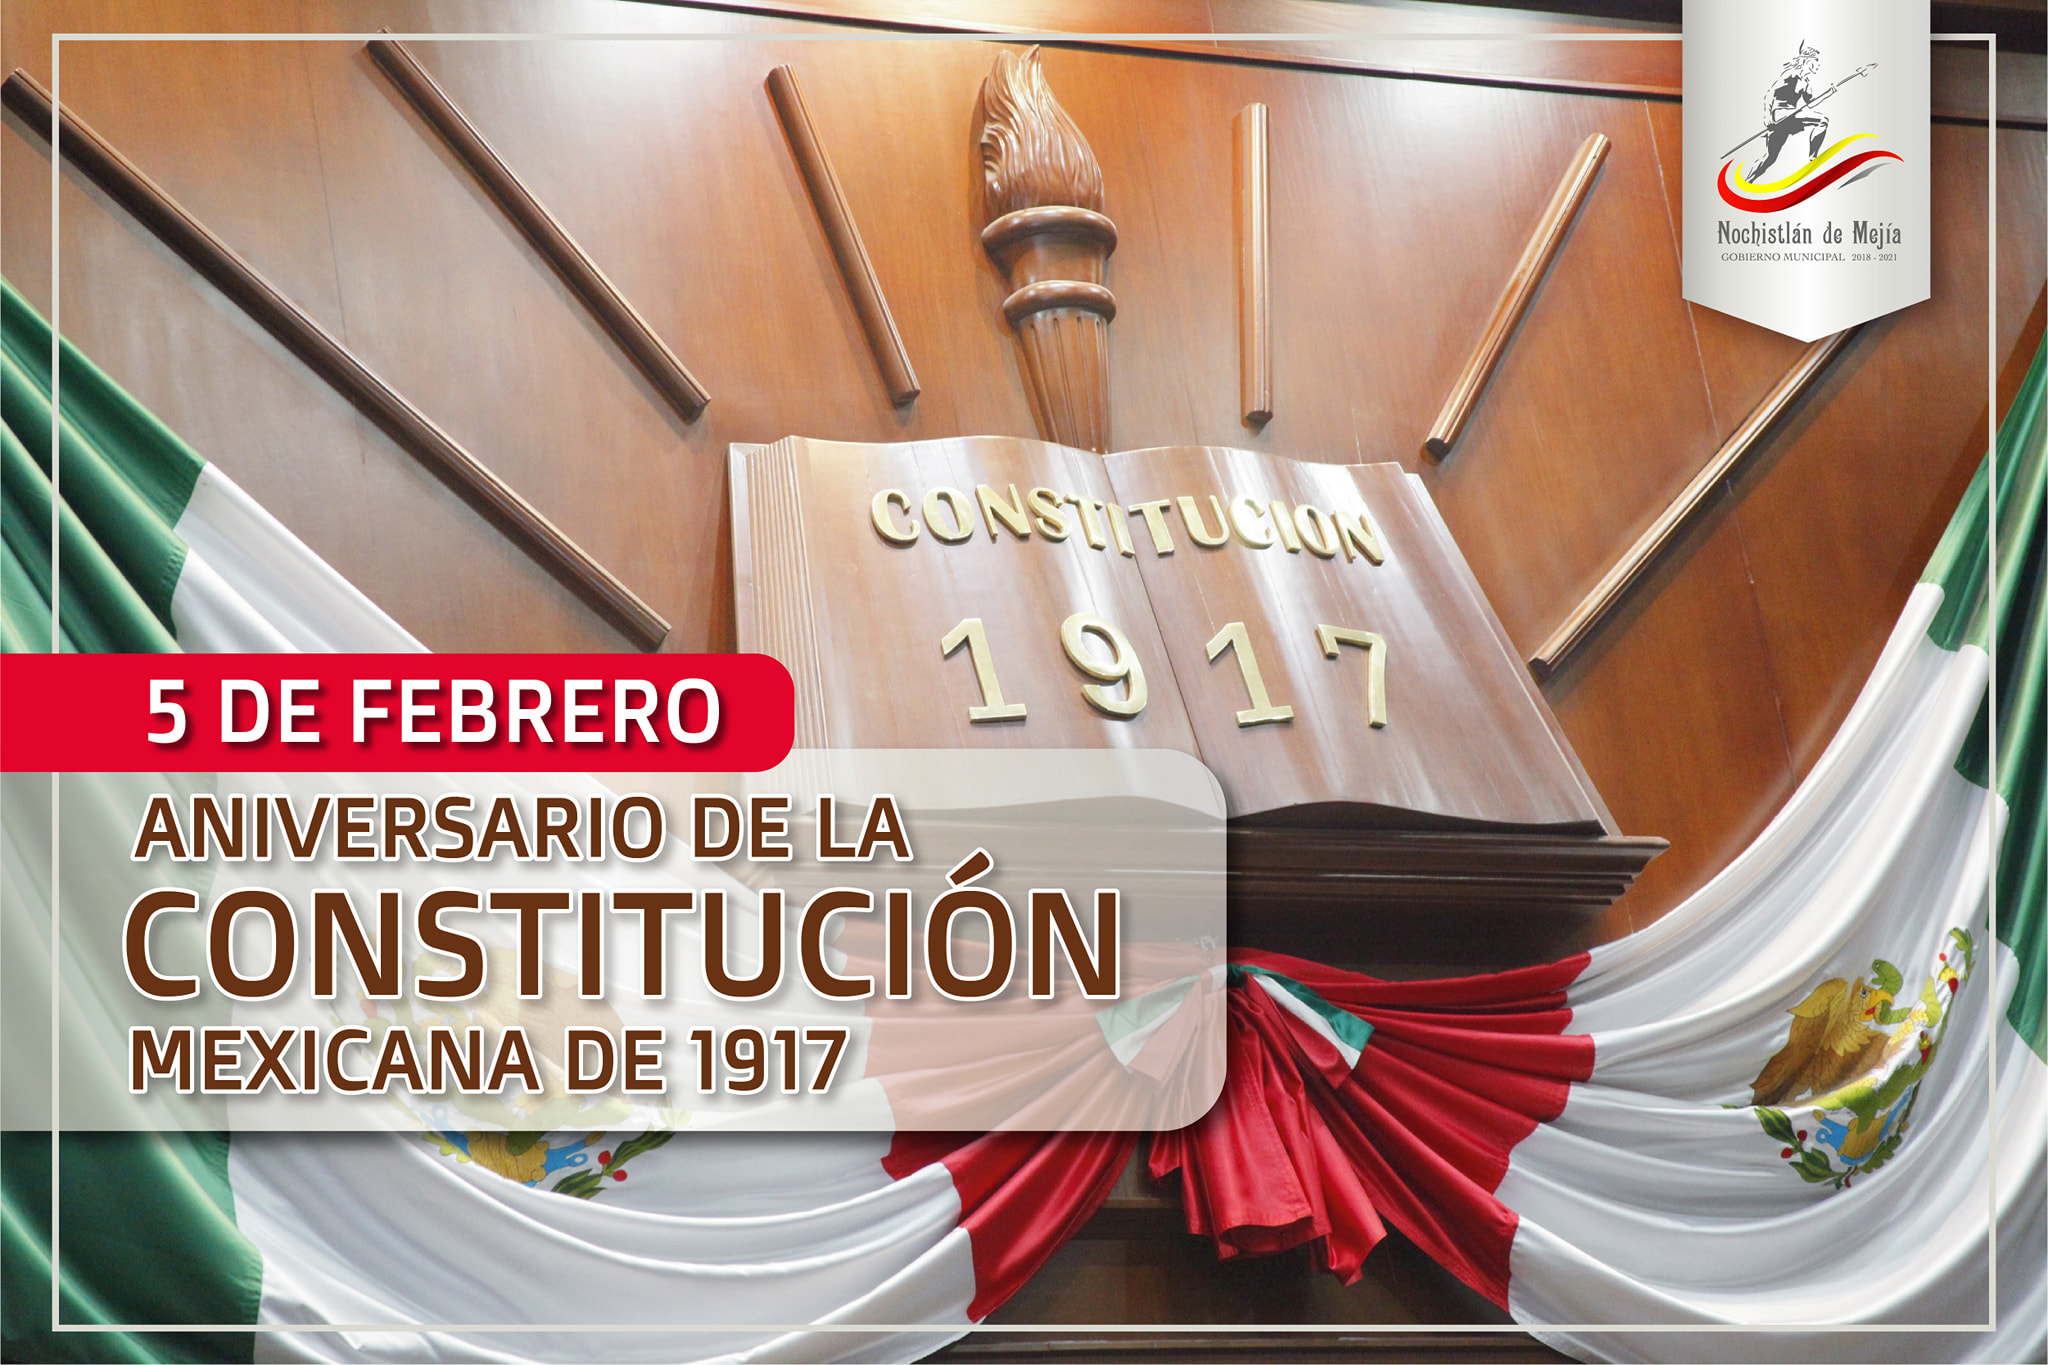 La Constitución Mexicana cumple 103 años de ser promulgada Gobierno